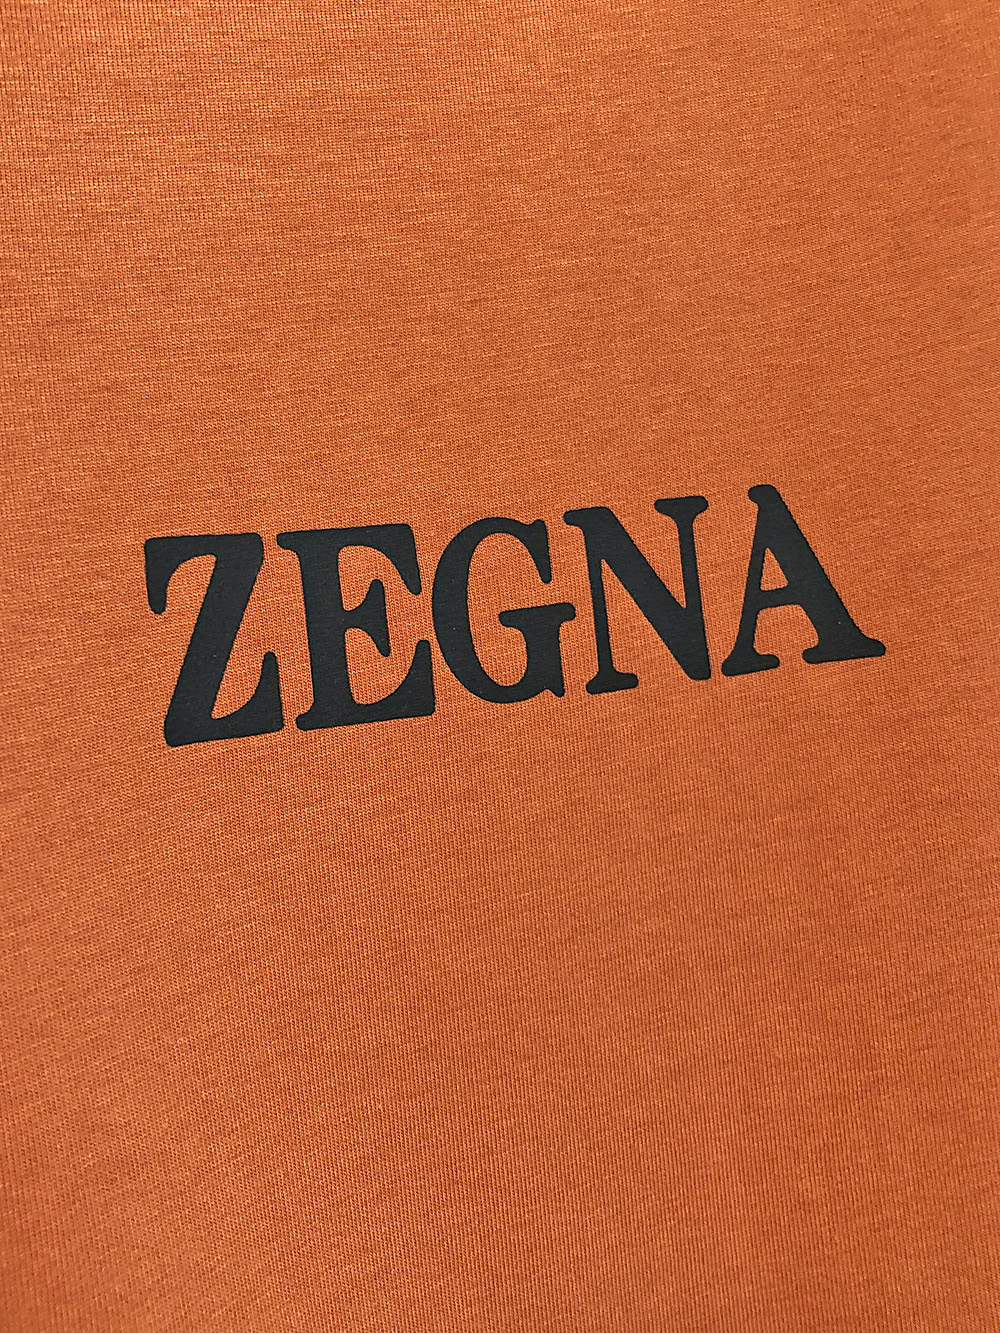 zegna杰尼亚24春夏新品时尚圆领短袖高级定制百搭款式立体印花logo更有实用感任何人都可以轻松驾驭面